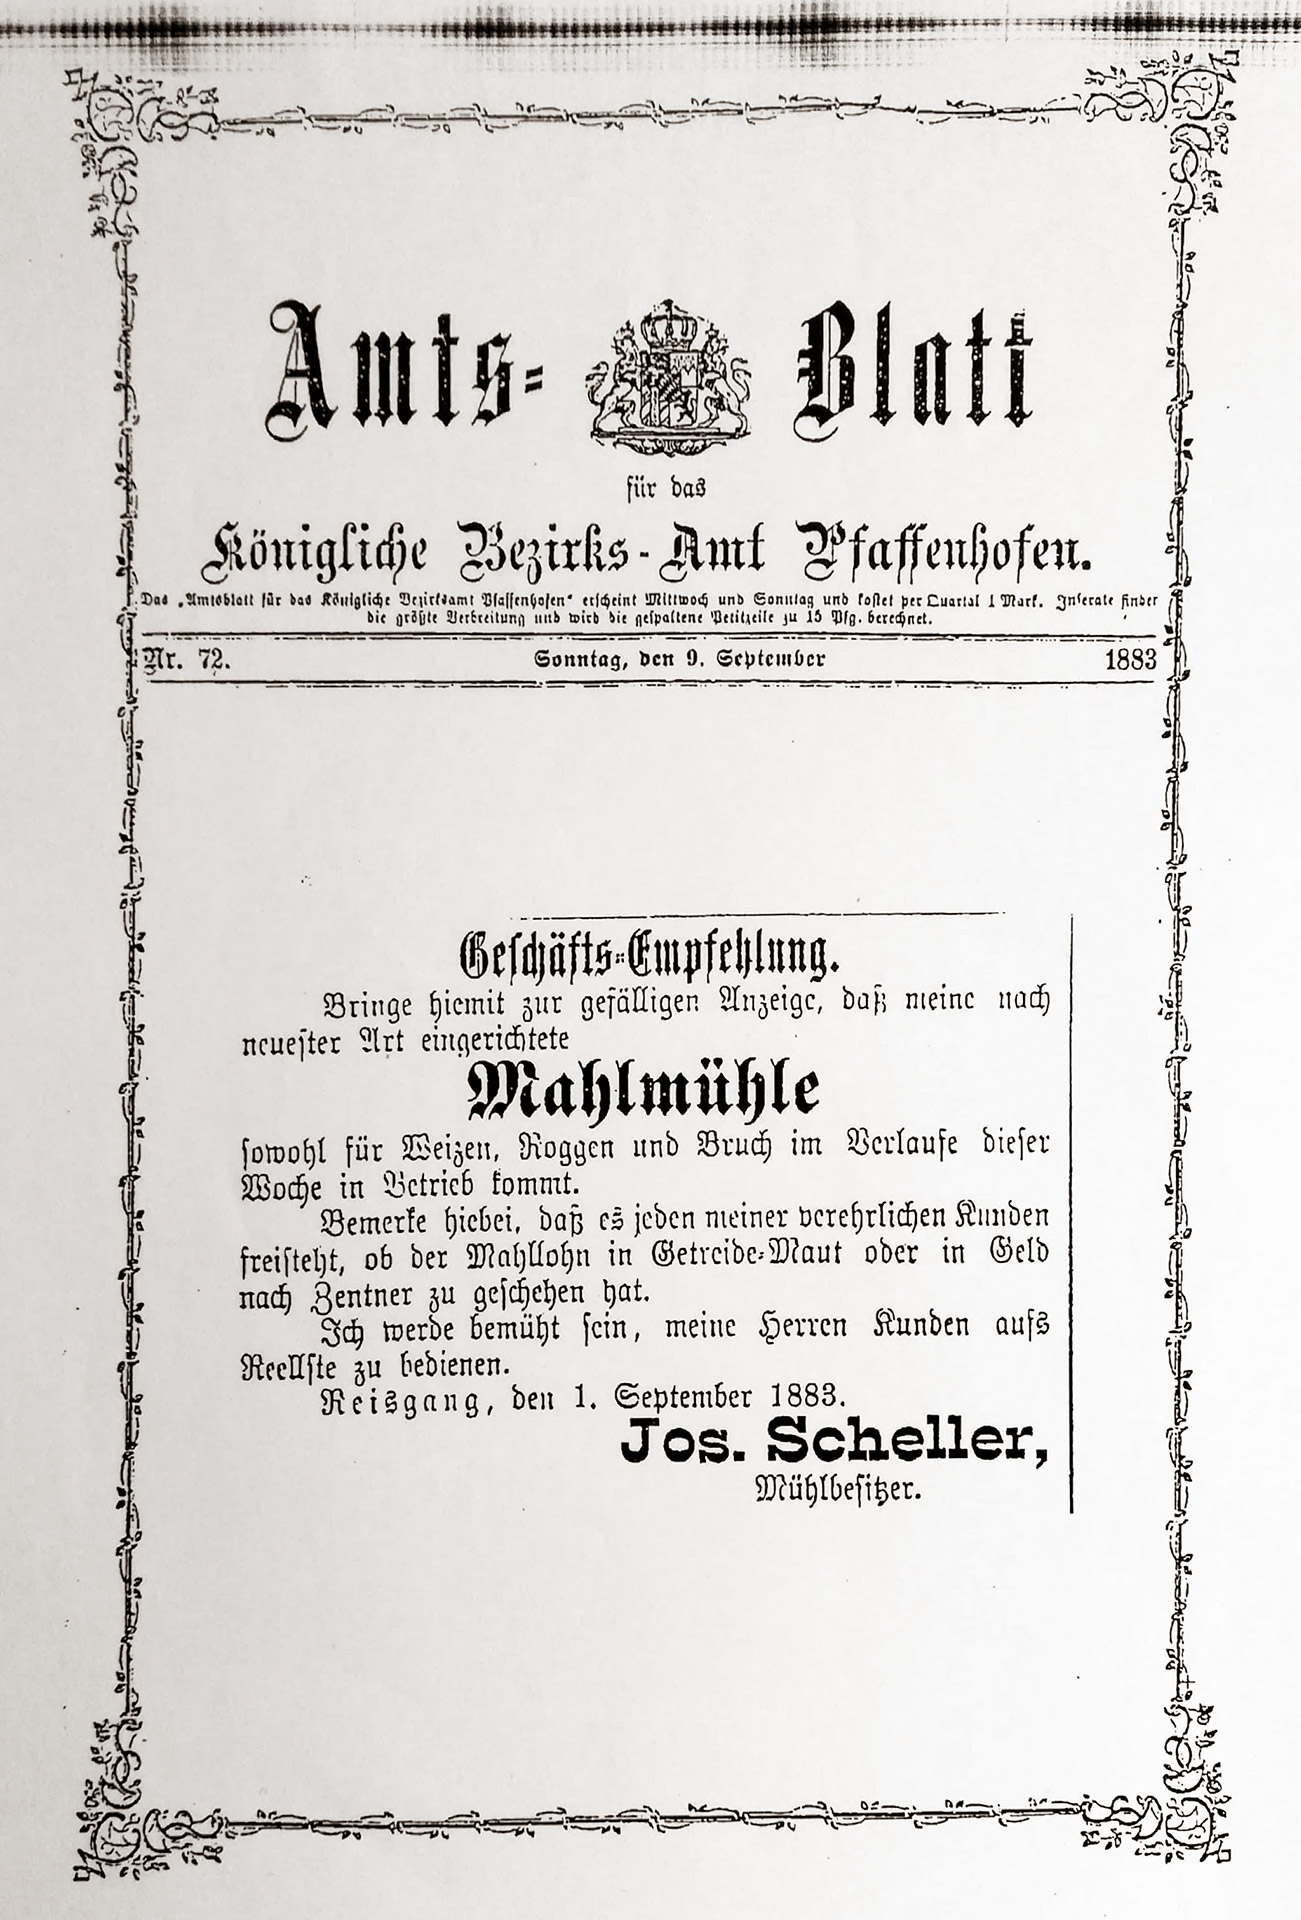 Geschäftsempfehlung Scheller Mühle im Amtsblatt Pfaffenhofen vom 1. September 1883